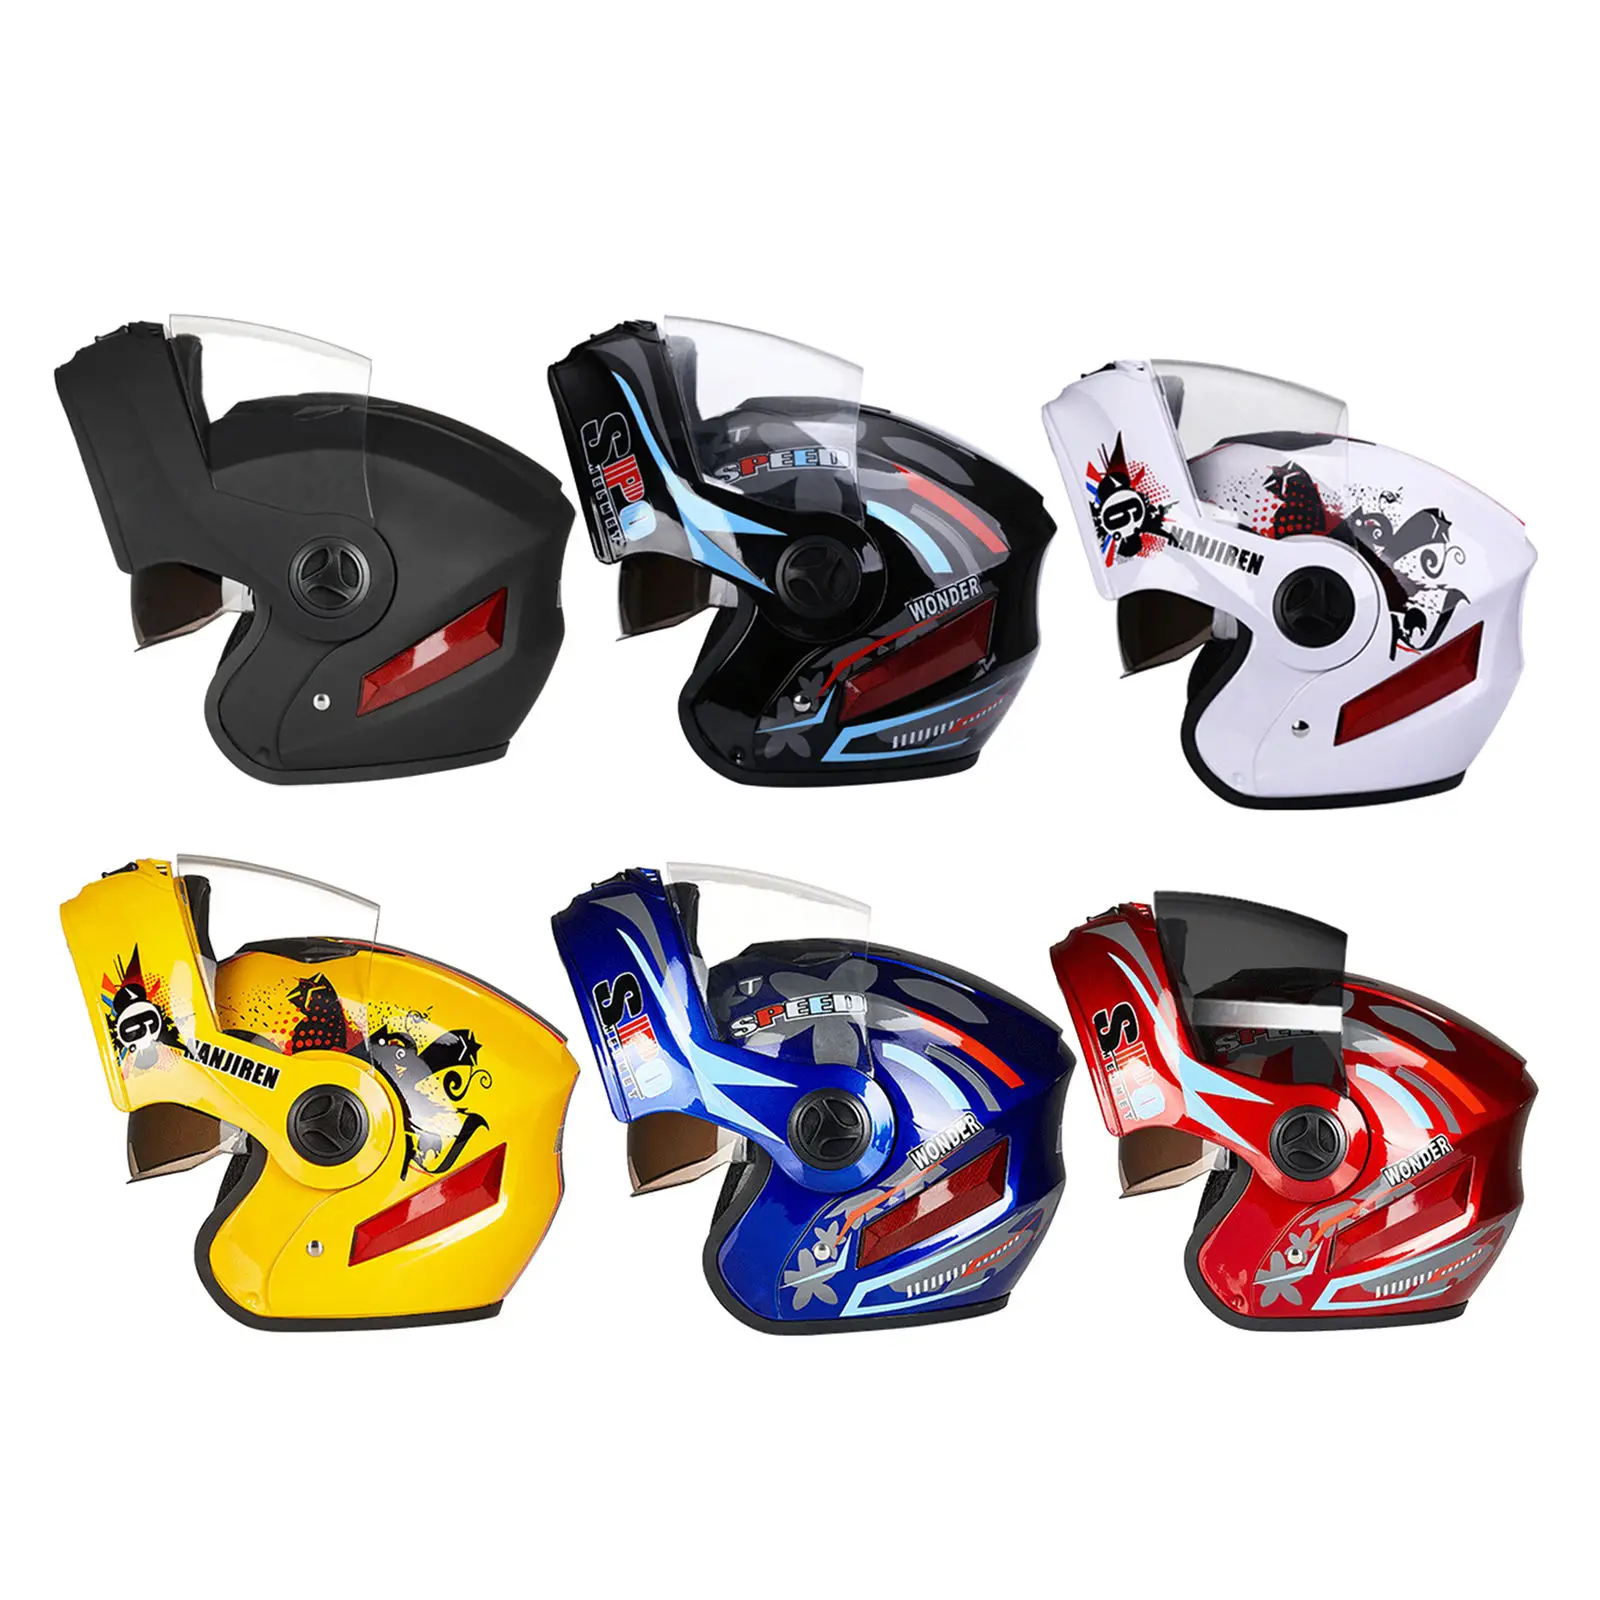 

Шлем мотоциклетный на все лицо, легкий с двойным козырьком из АБС-пластика, с вентиляцией, для езды на мотоцикле и велосипеде